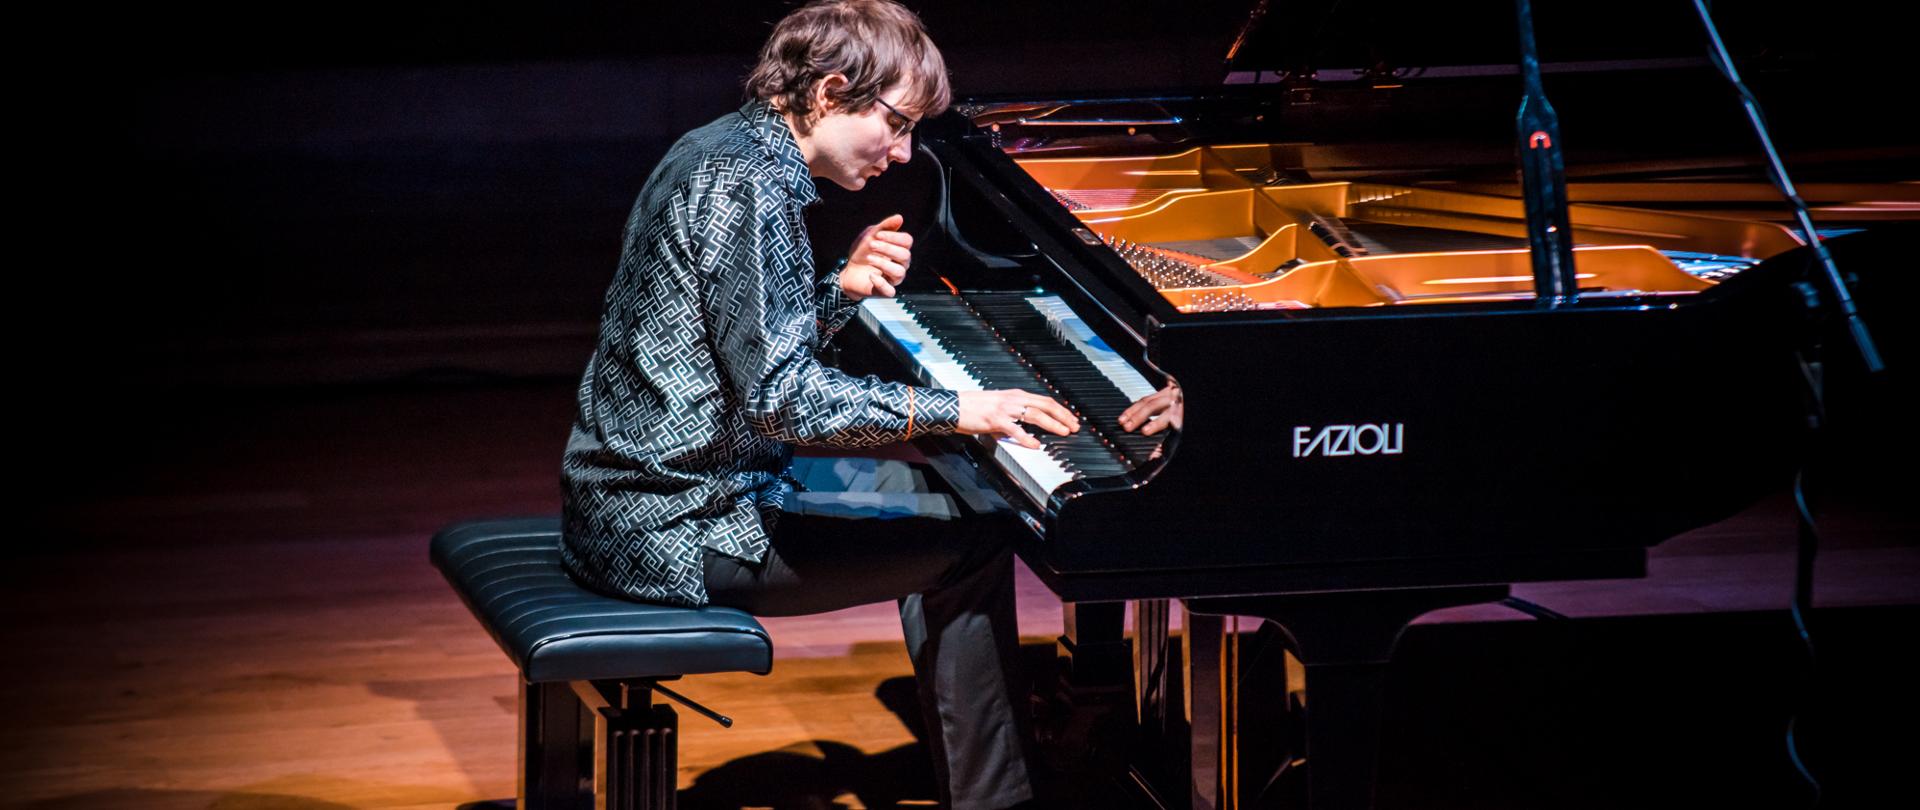 Zdjęcie przedstawia grającego artystę na fortepianie Fazzioli